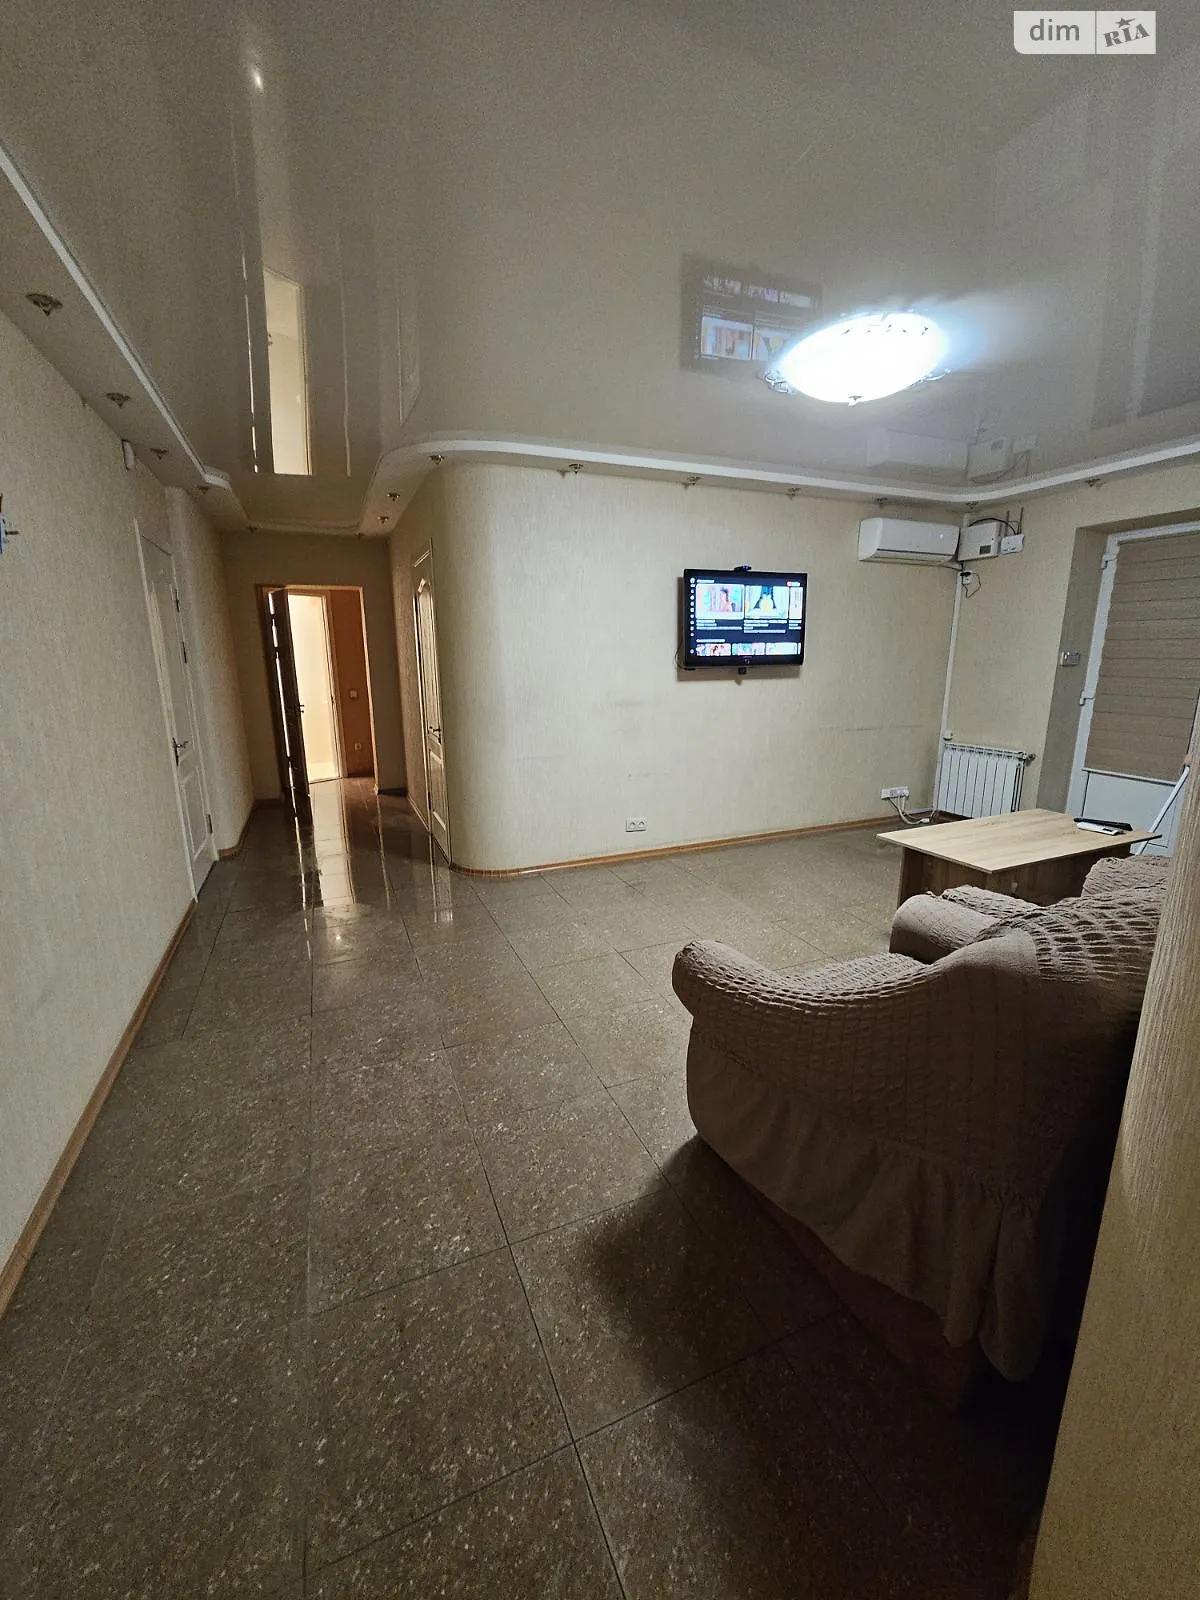 Здається в оренду 3-кімнатна квартира у Кропивницькому, цена: 1000 грн - фото 1